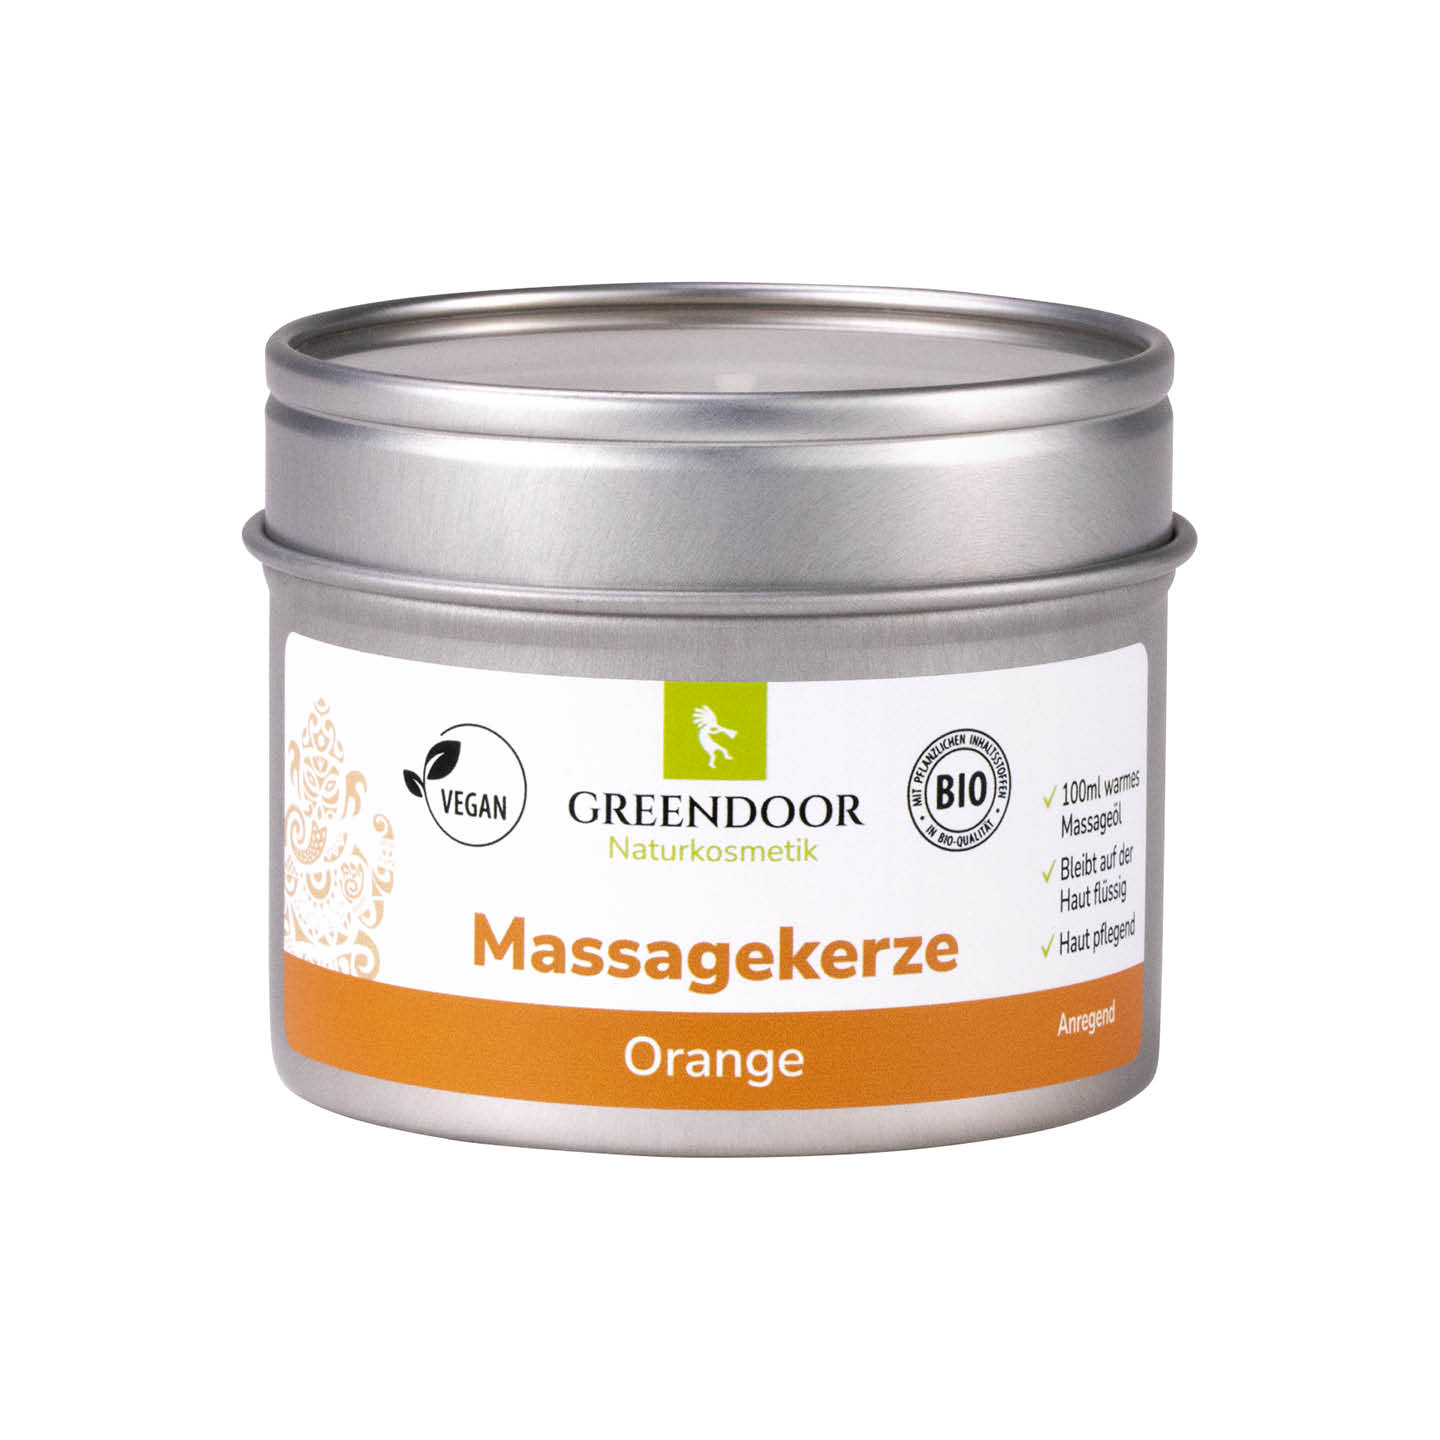 Massagekerze Orange 100ml, vegane Romantik Massage für perfekte Stunden zu zweit